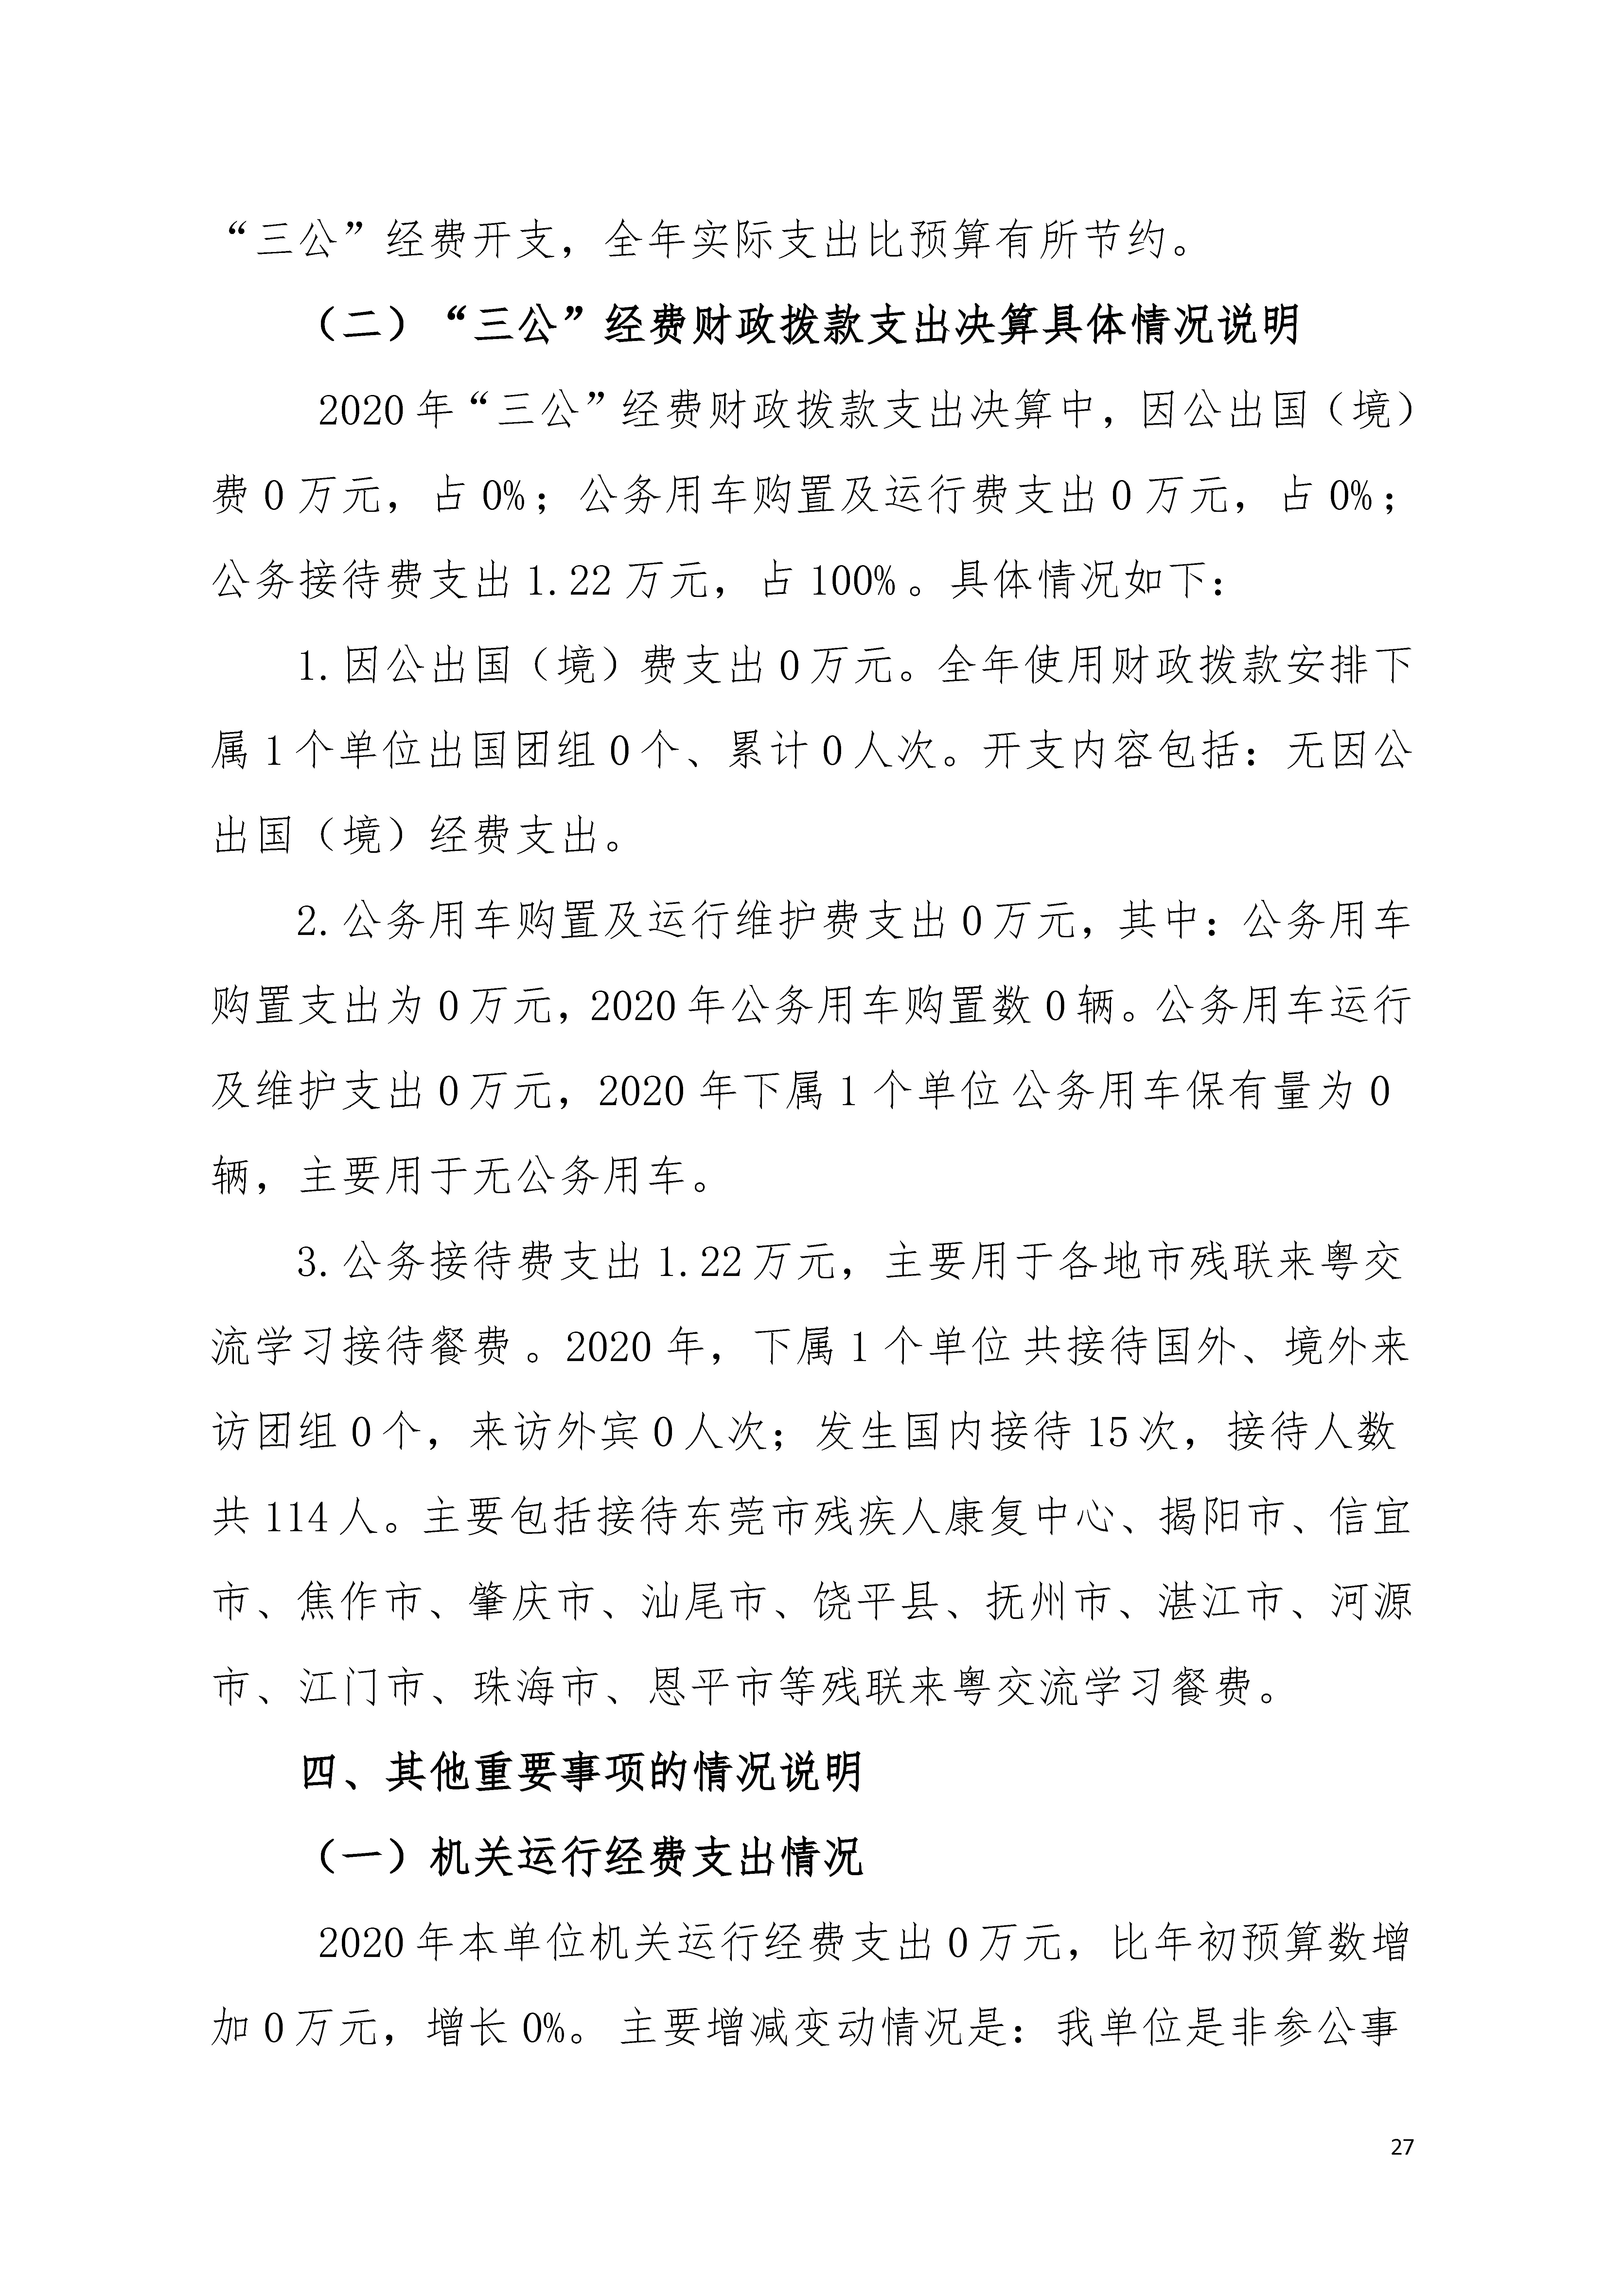 2020年广东省残疾人康复中心部门决算_页面_27.jpg